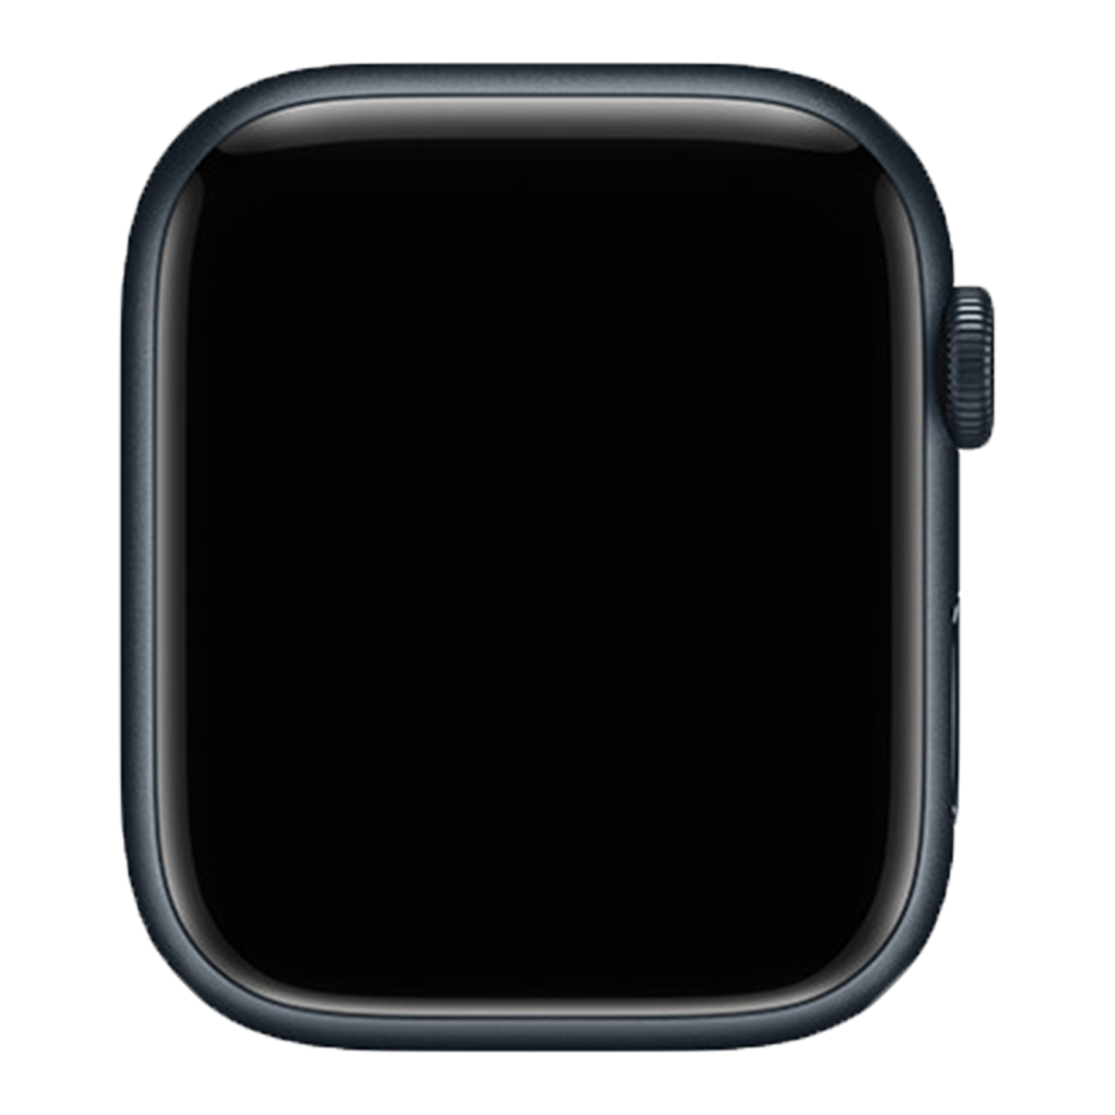 Series 9 Apple Watch display